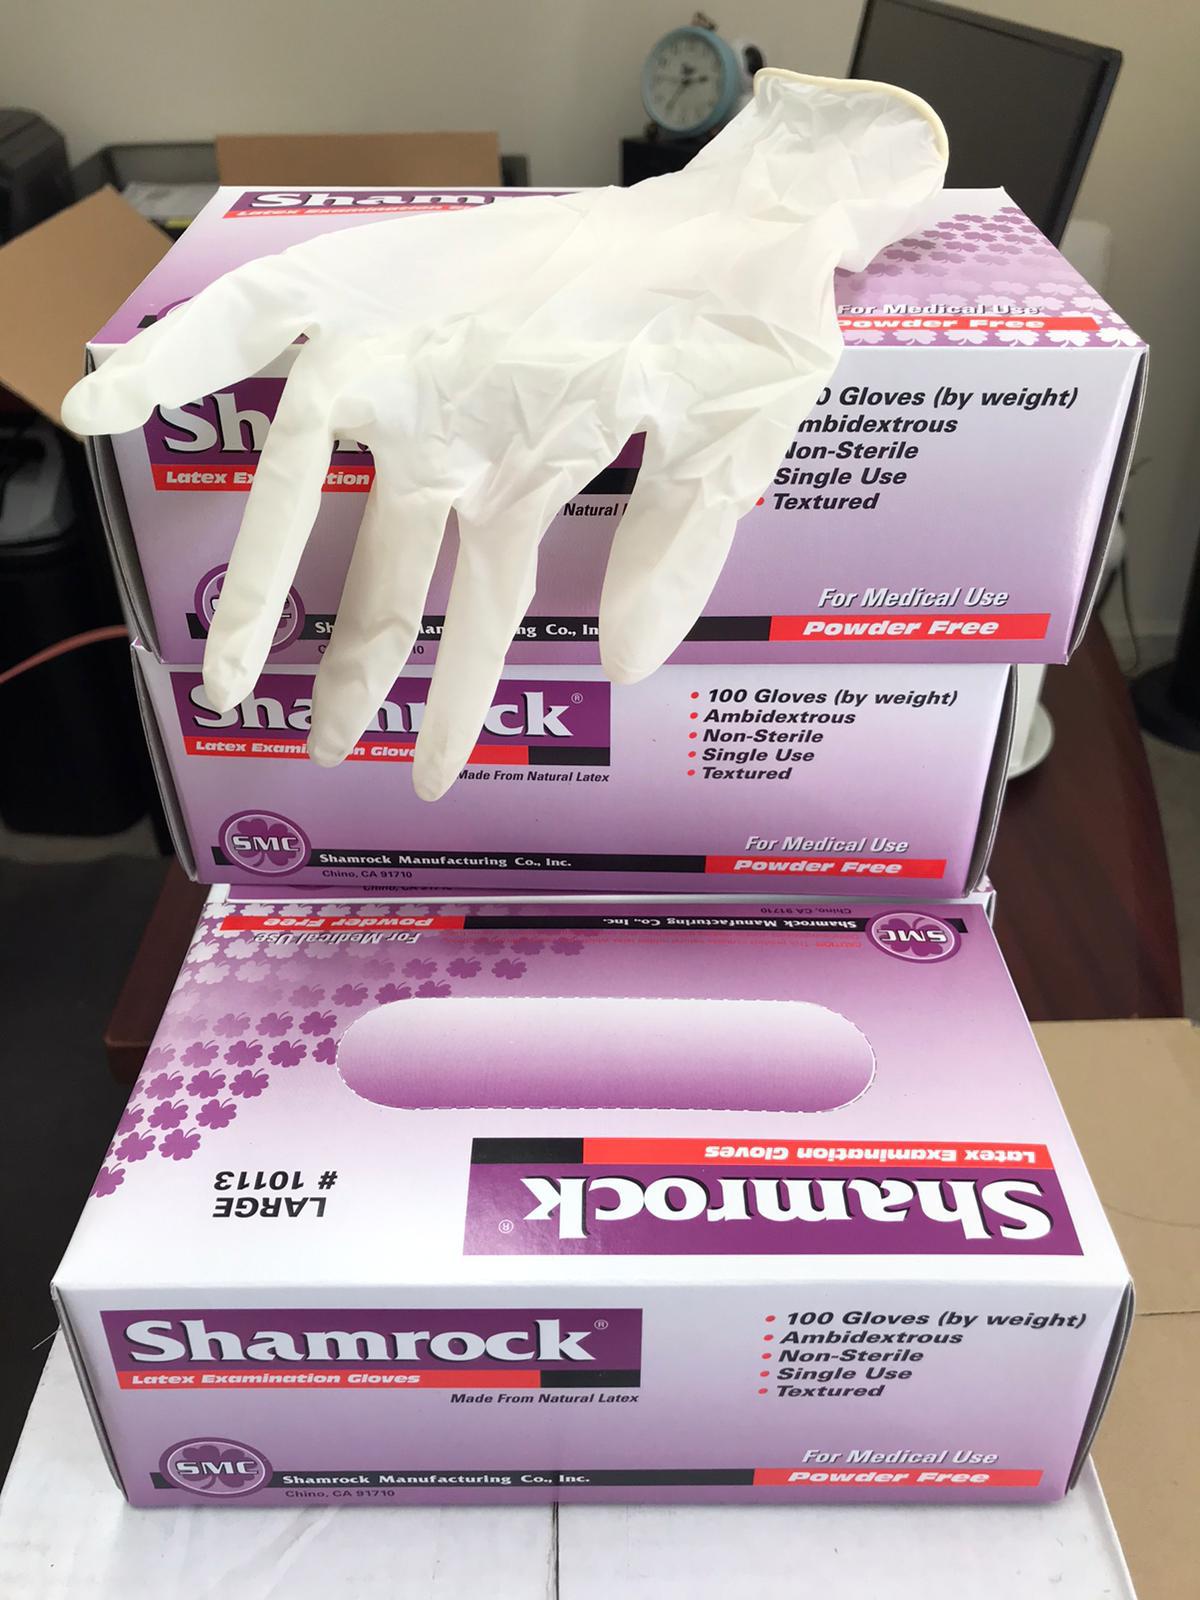 shamrock-gloves